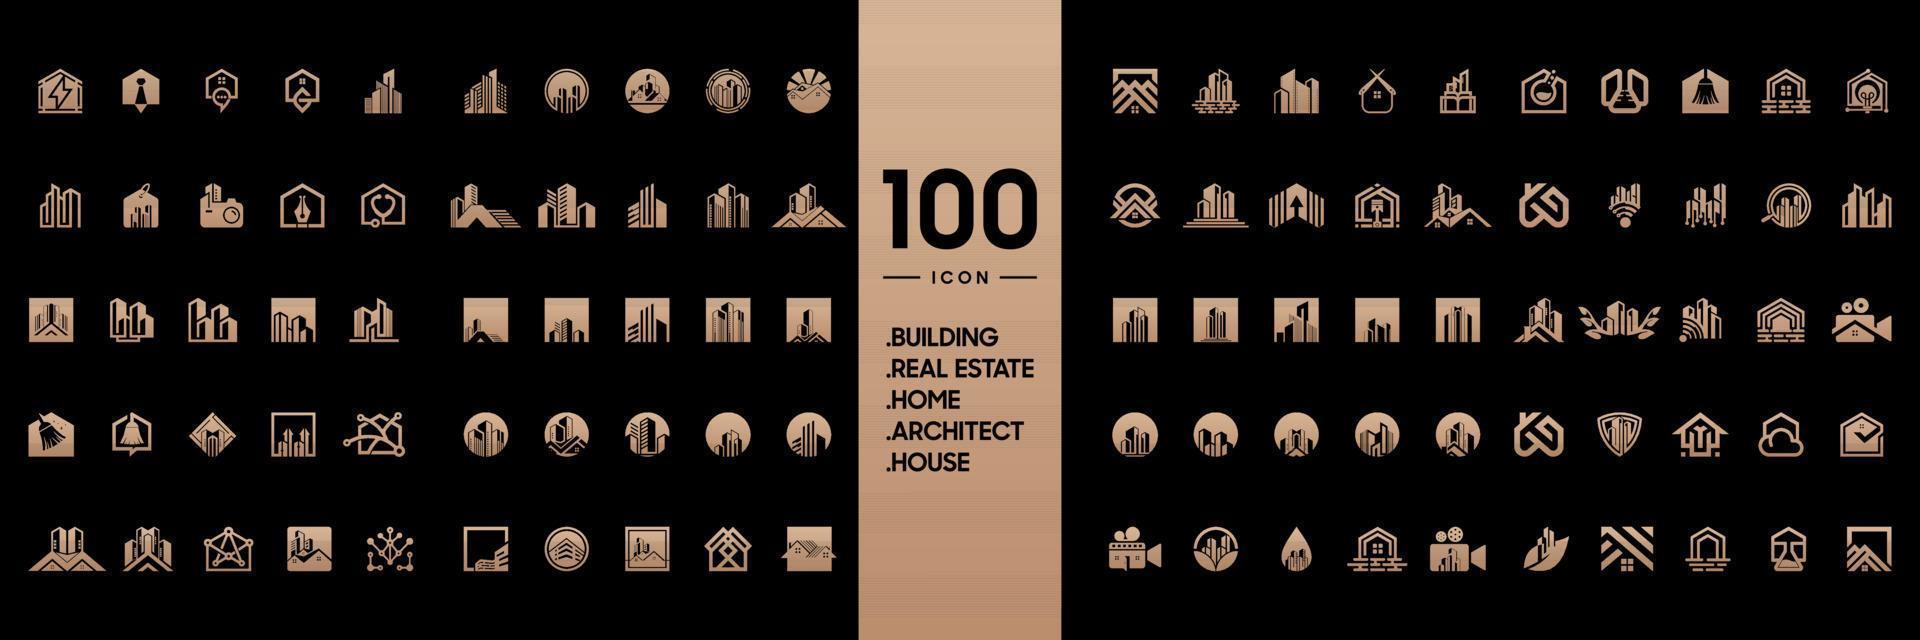 verzameling van logo ontwerpen voor gebouwen, huizen, daken, kantoren, gebouwen, architecten vector